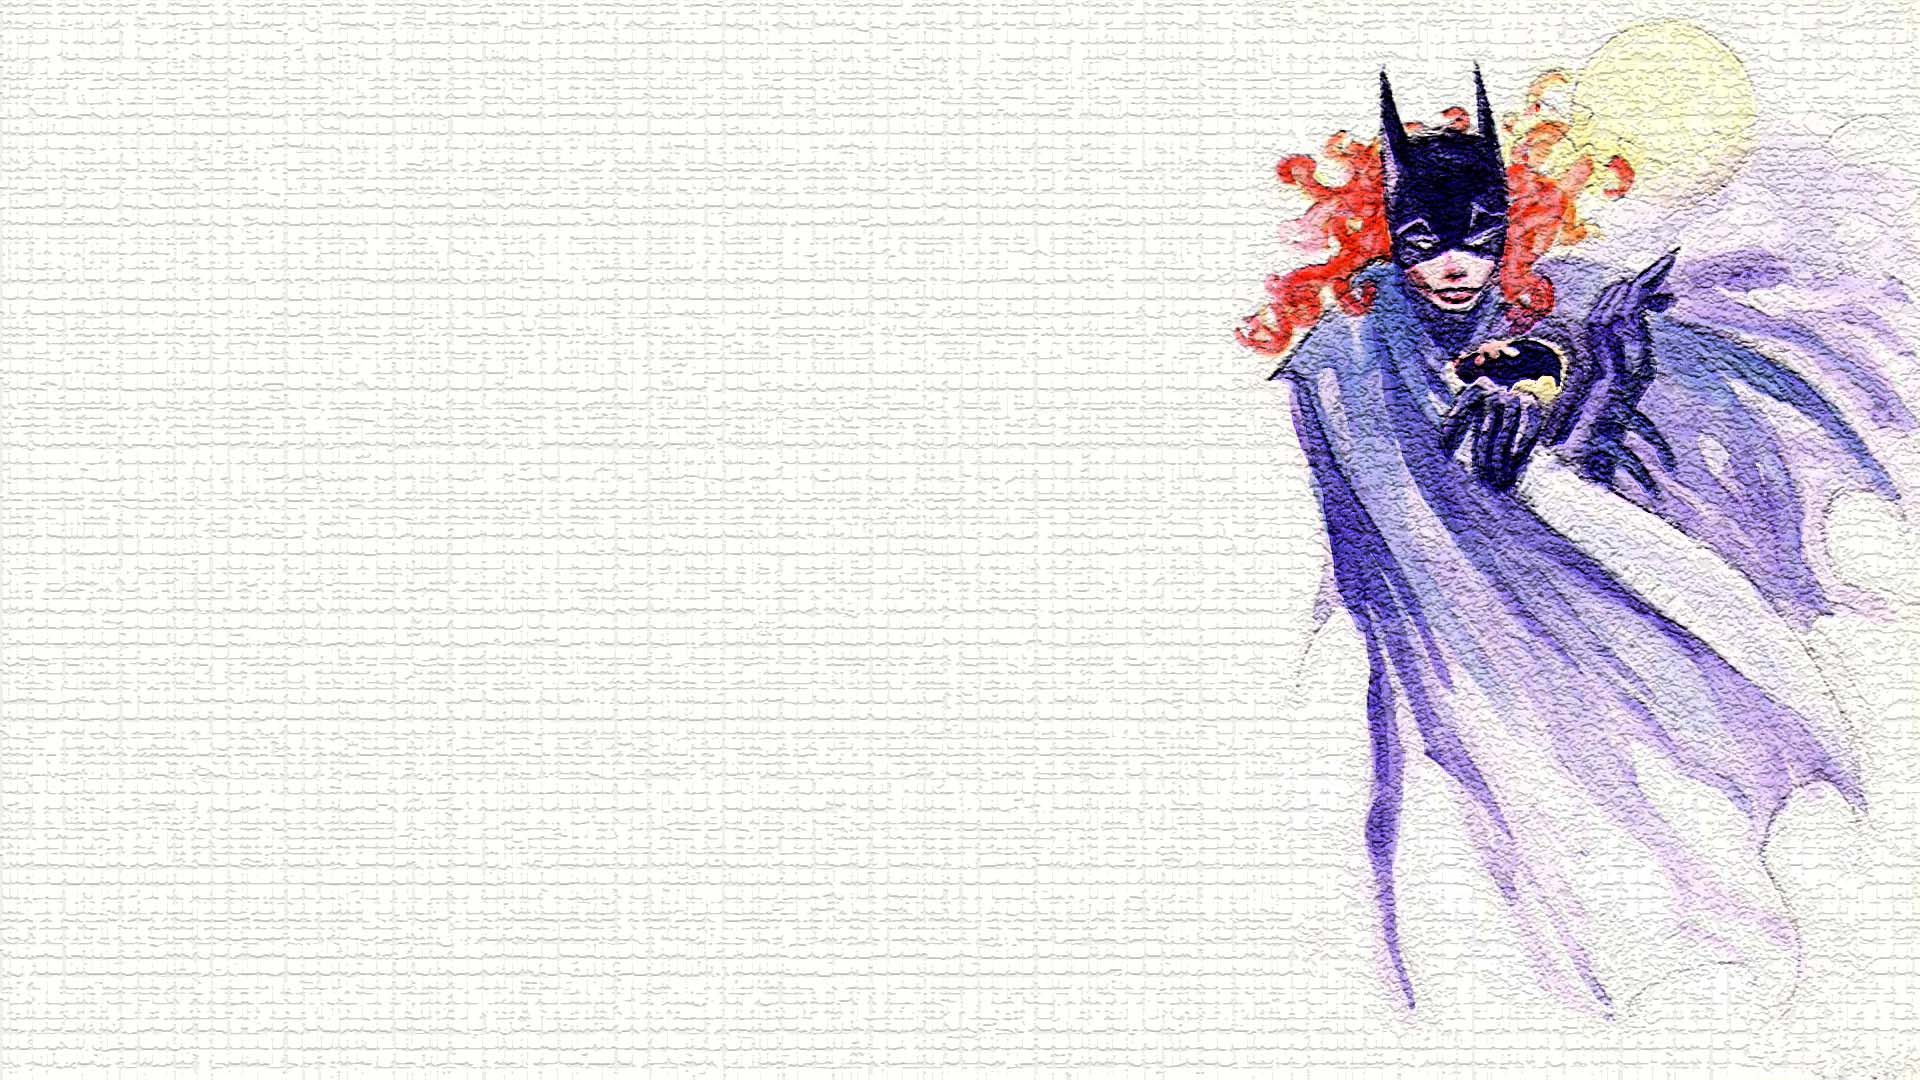 Скачать обои бесплатно Комиксы, Бэтмен, Бэтгёрл картинка на рабочий стол ПК